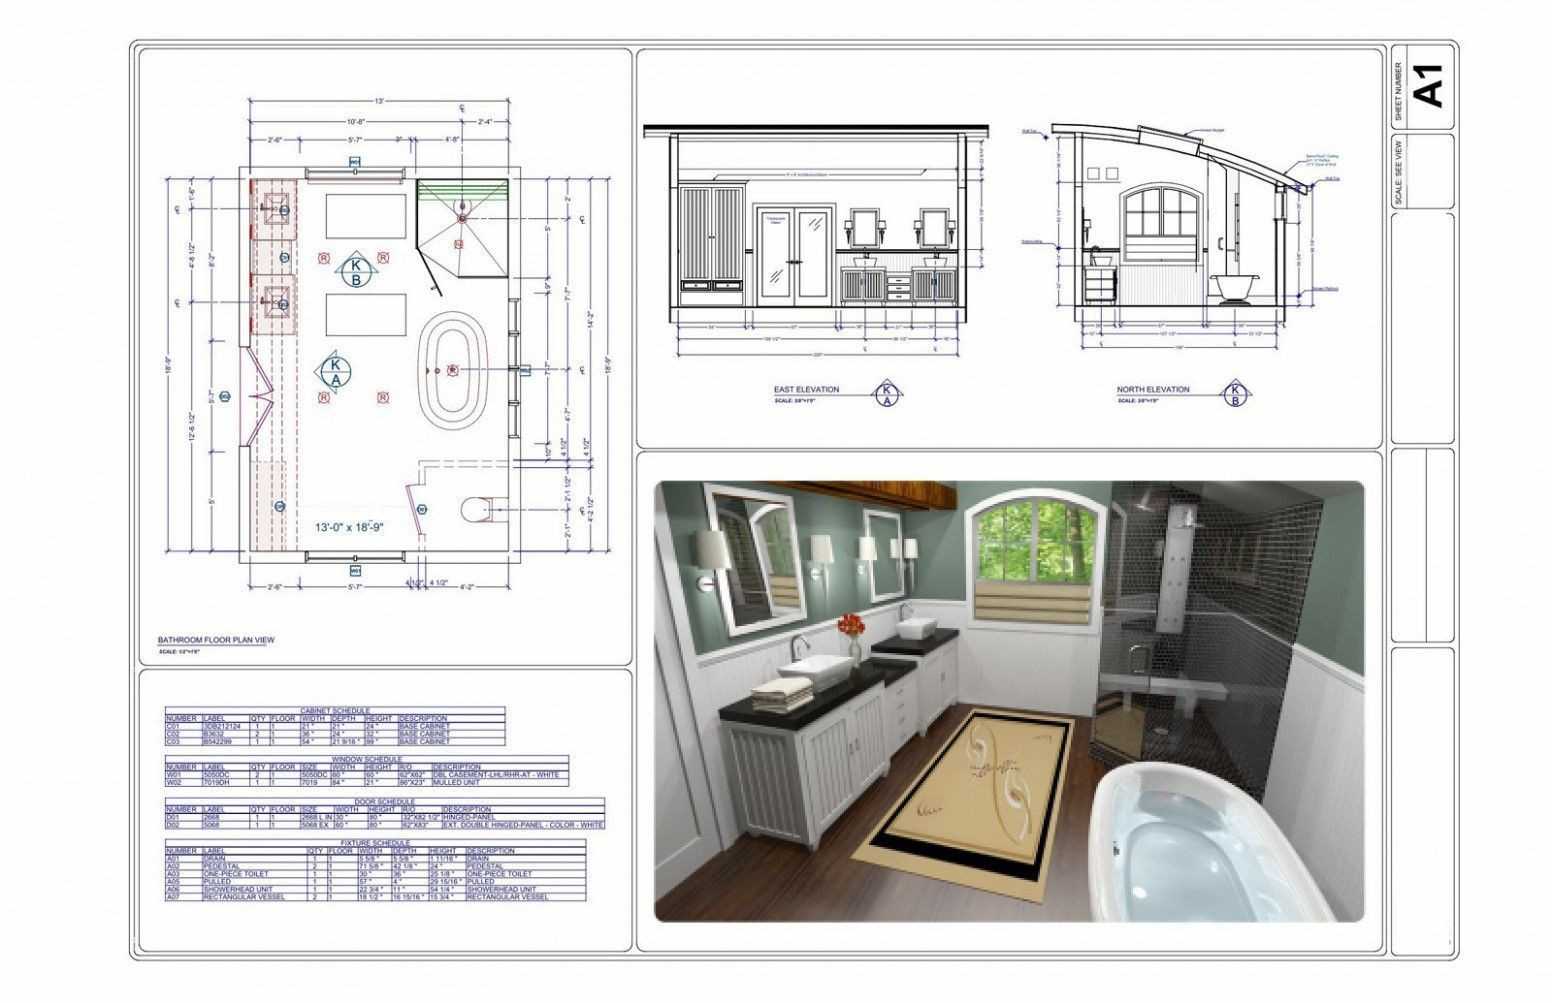 Free Online Bathroom Design Tool
 kitchendesigntoolonline